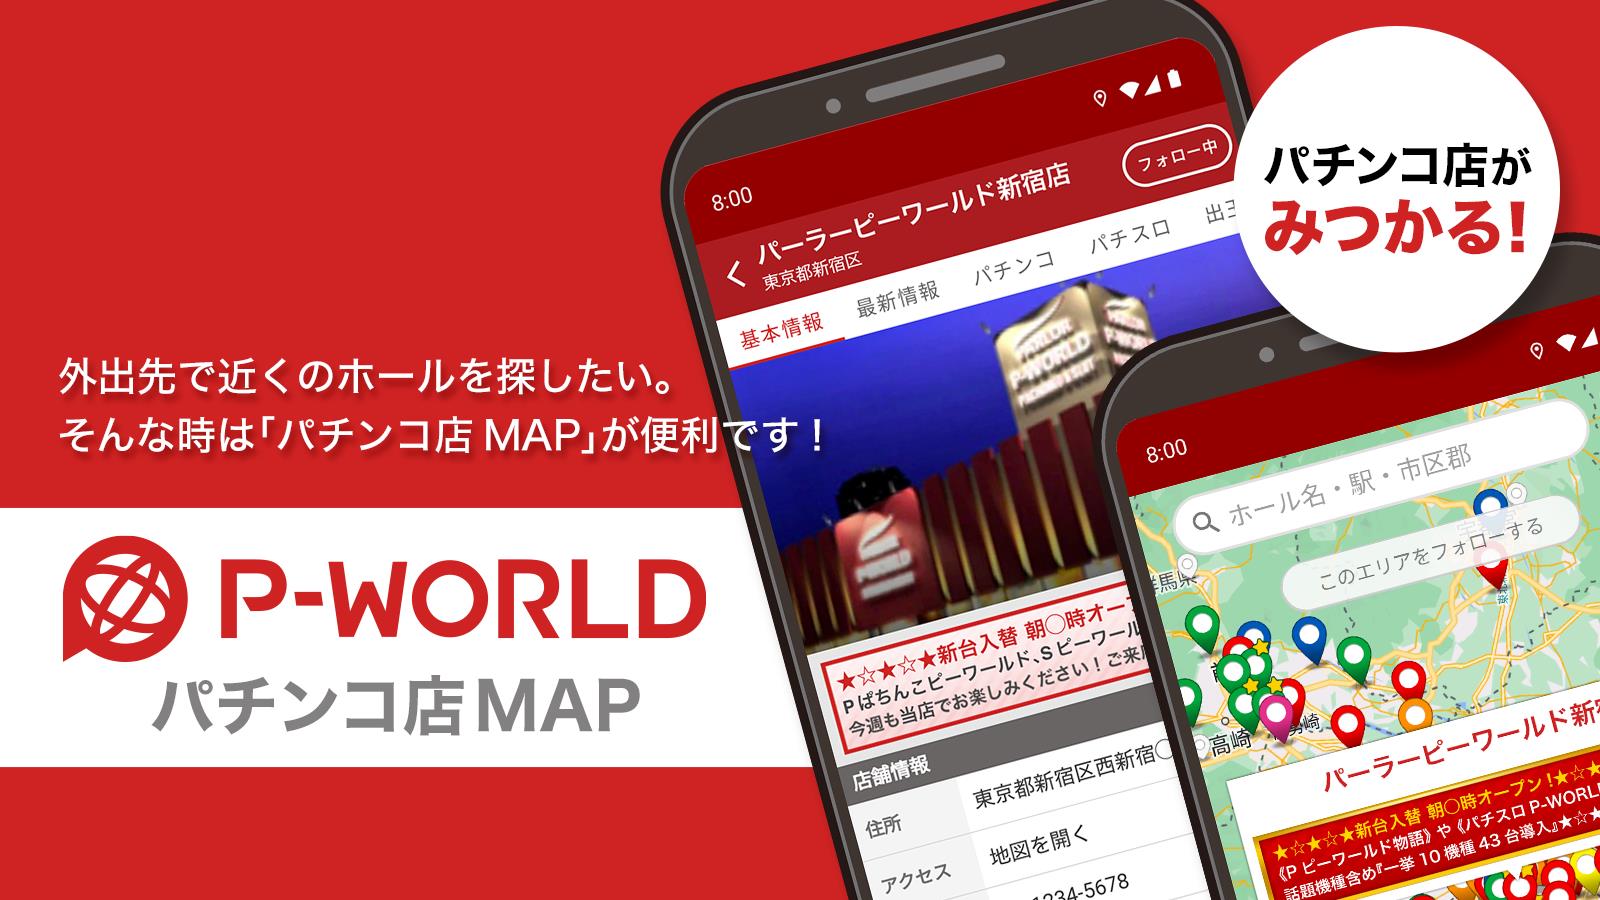 P-WORLD パチンコ店MAP - パチンコ店がみつかる Screenshot 1